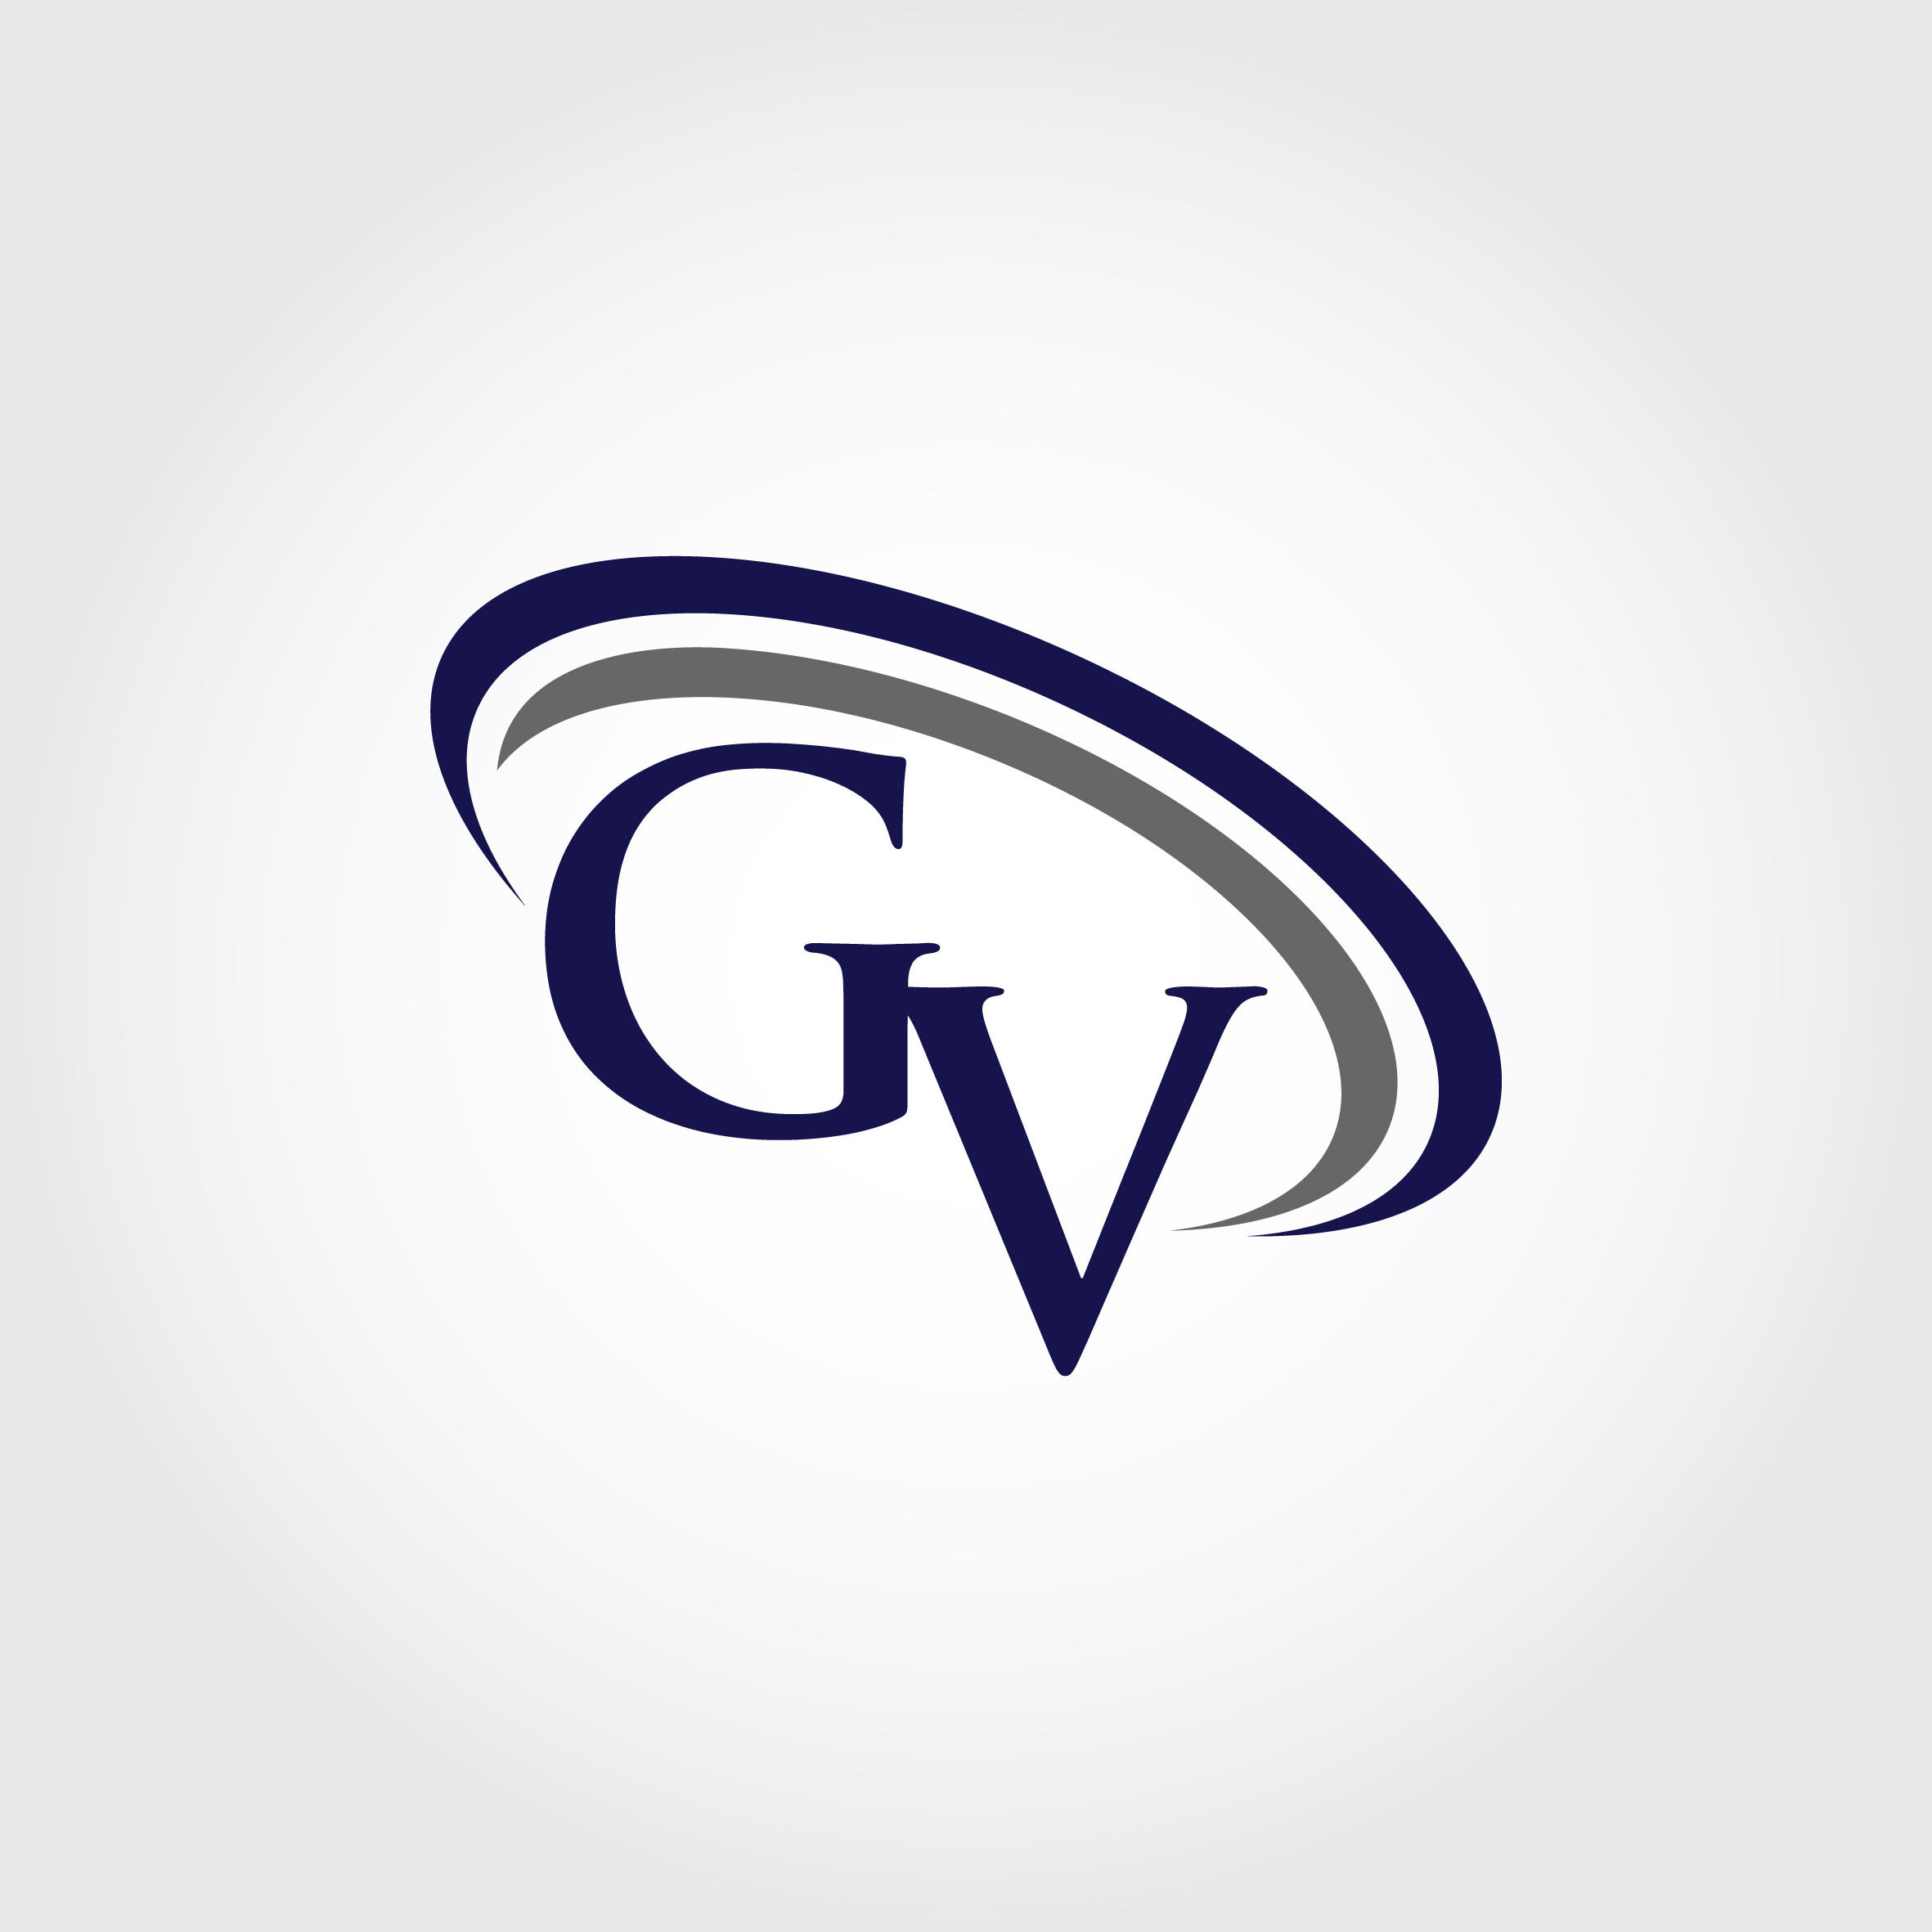 GV logo. GV design. Blue and red GV letter. GV letter logo design. Initial letter GV linked ...